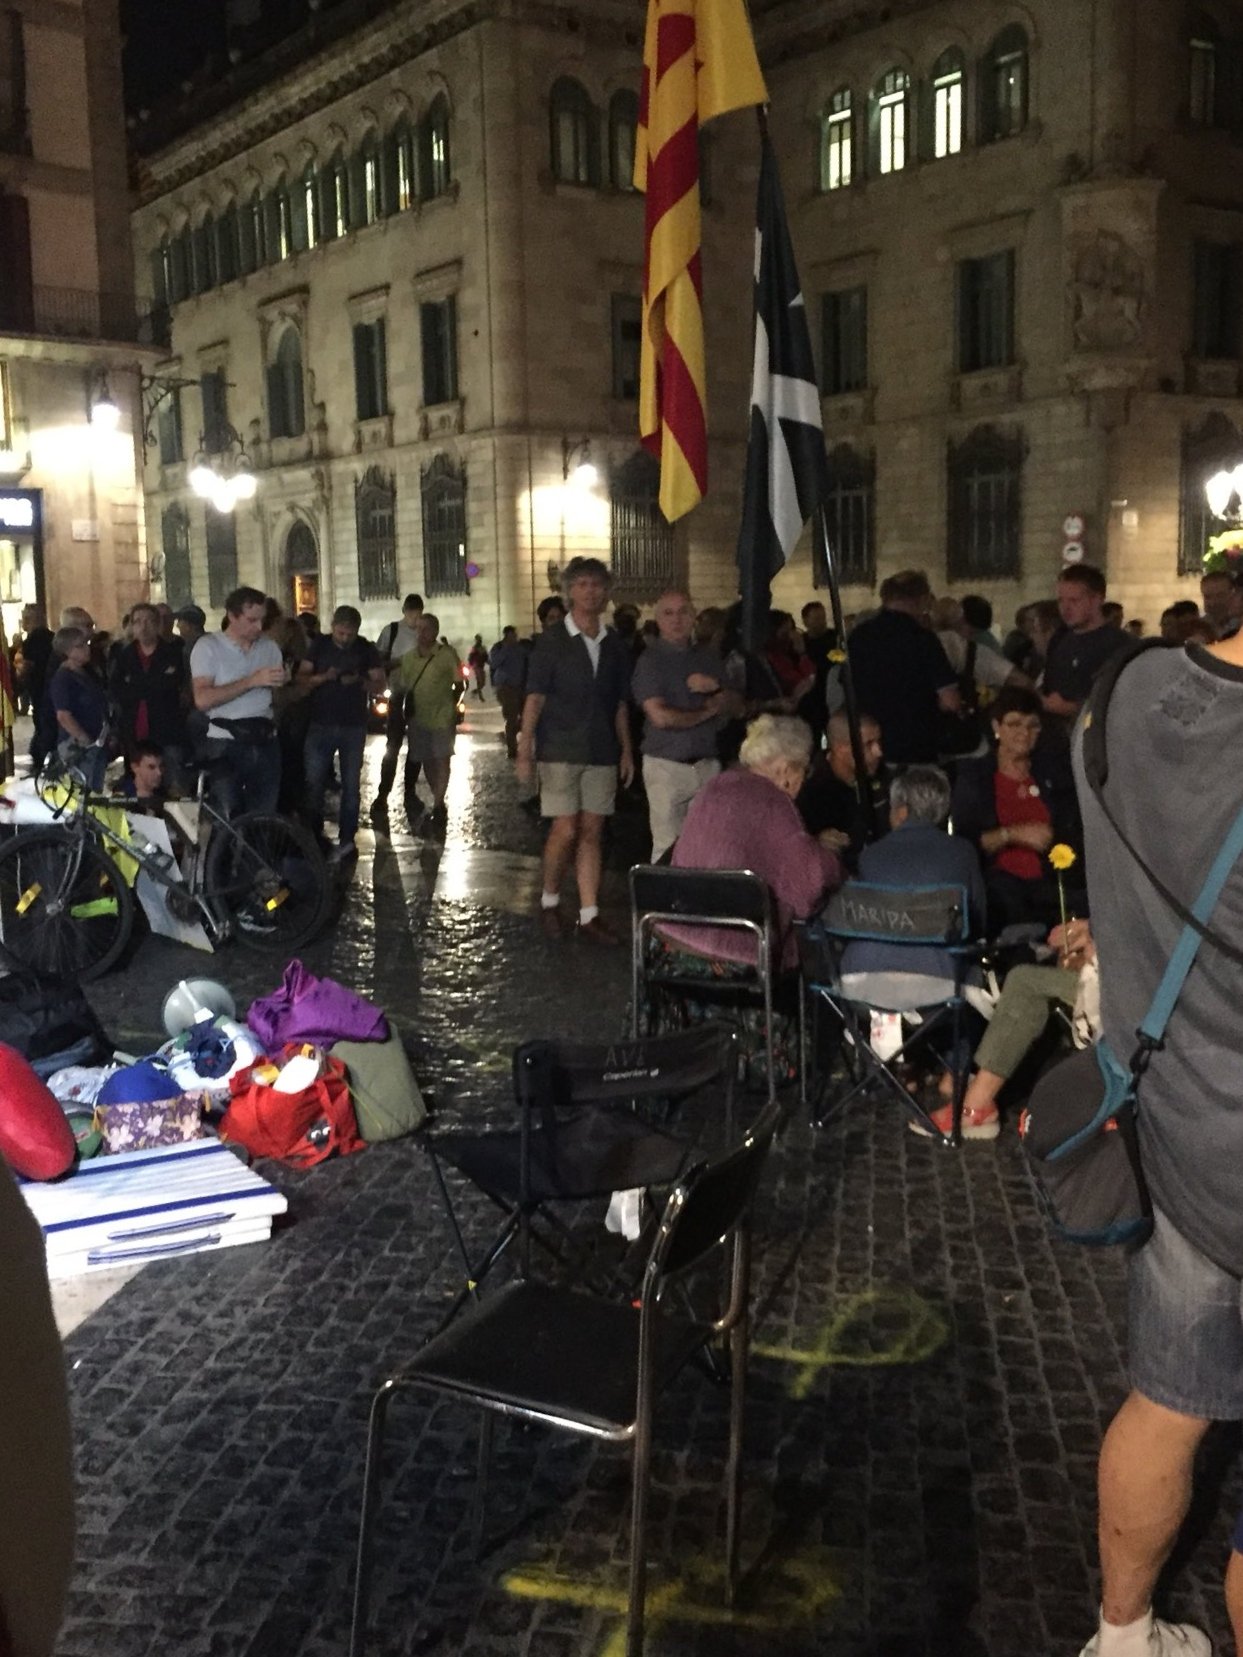 Responden al desalojo de la acampada con una concentración en plaza Sant Jaume